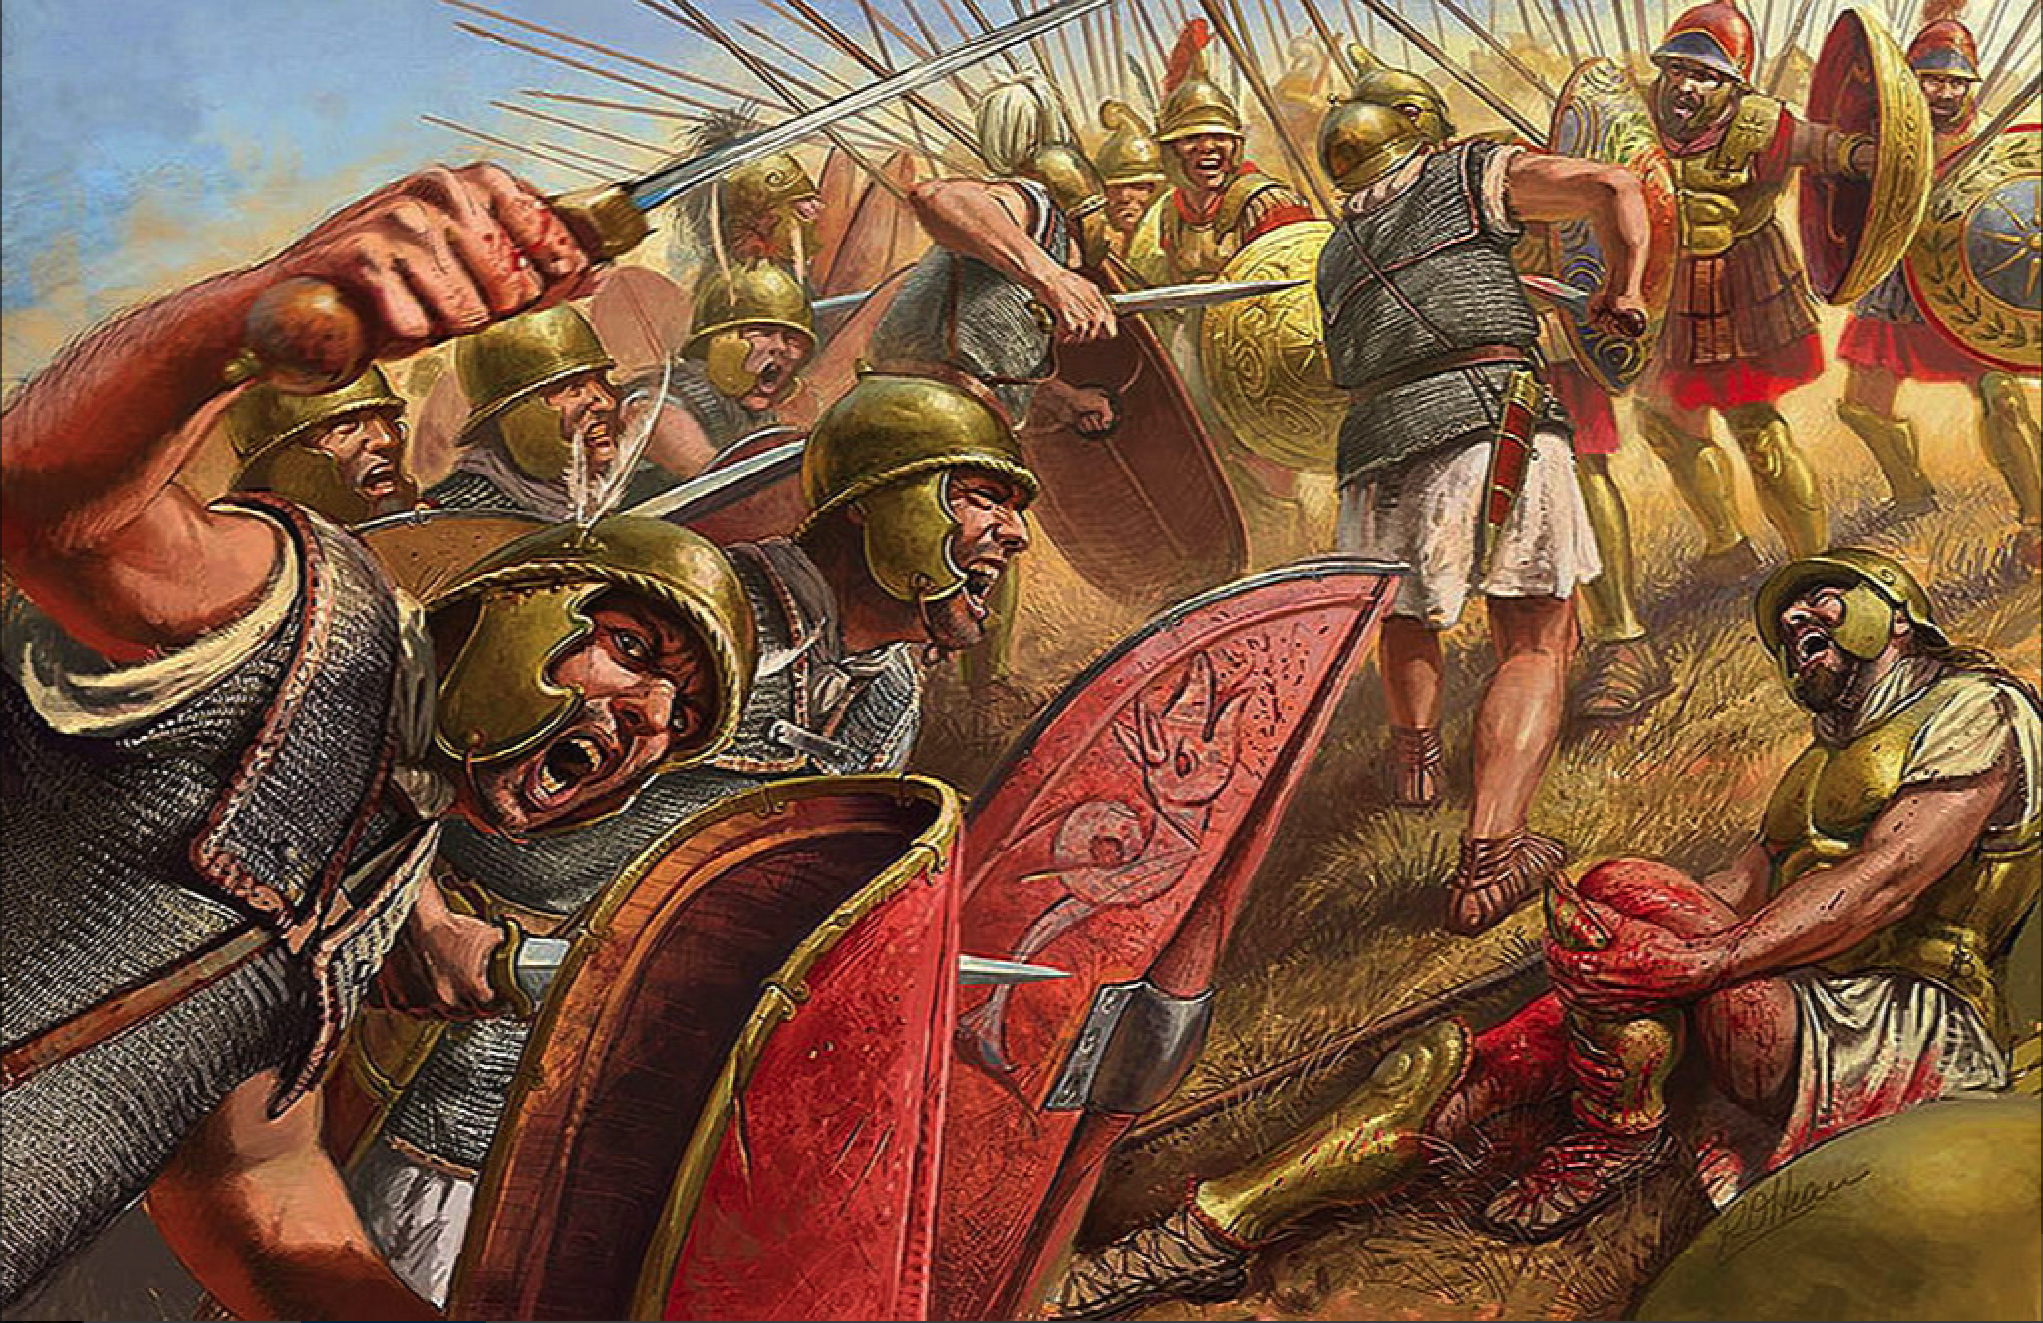 Защита древнего рима. Битва при Киноскефалах 197 г до н.э. Римский Легион фаланга. Битва македонцев против римлян. Македонская фаланга.